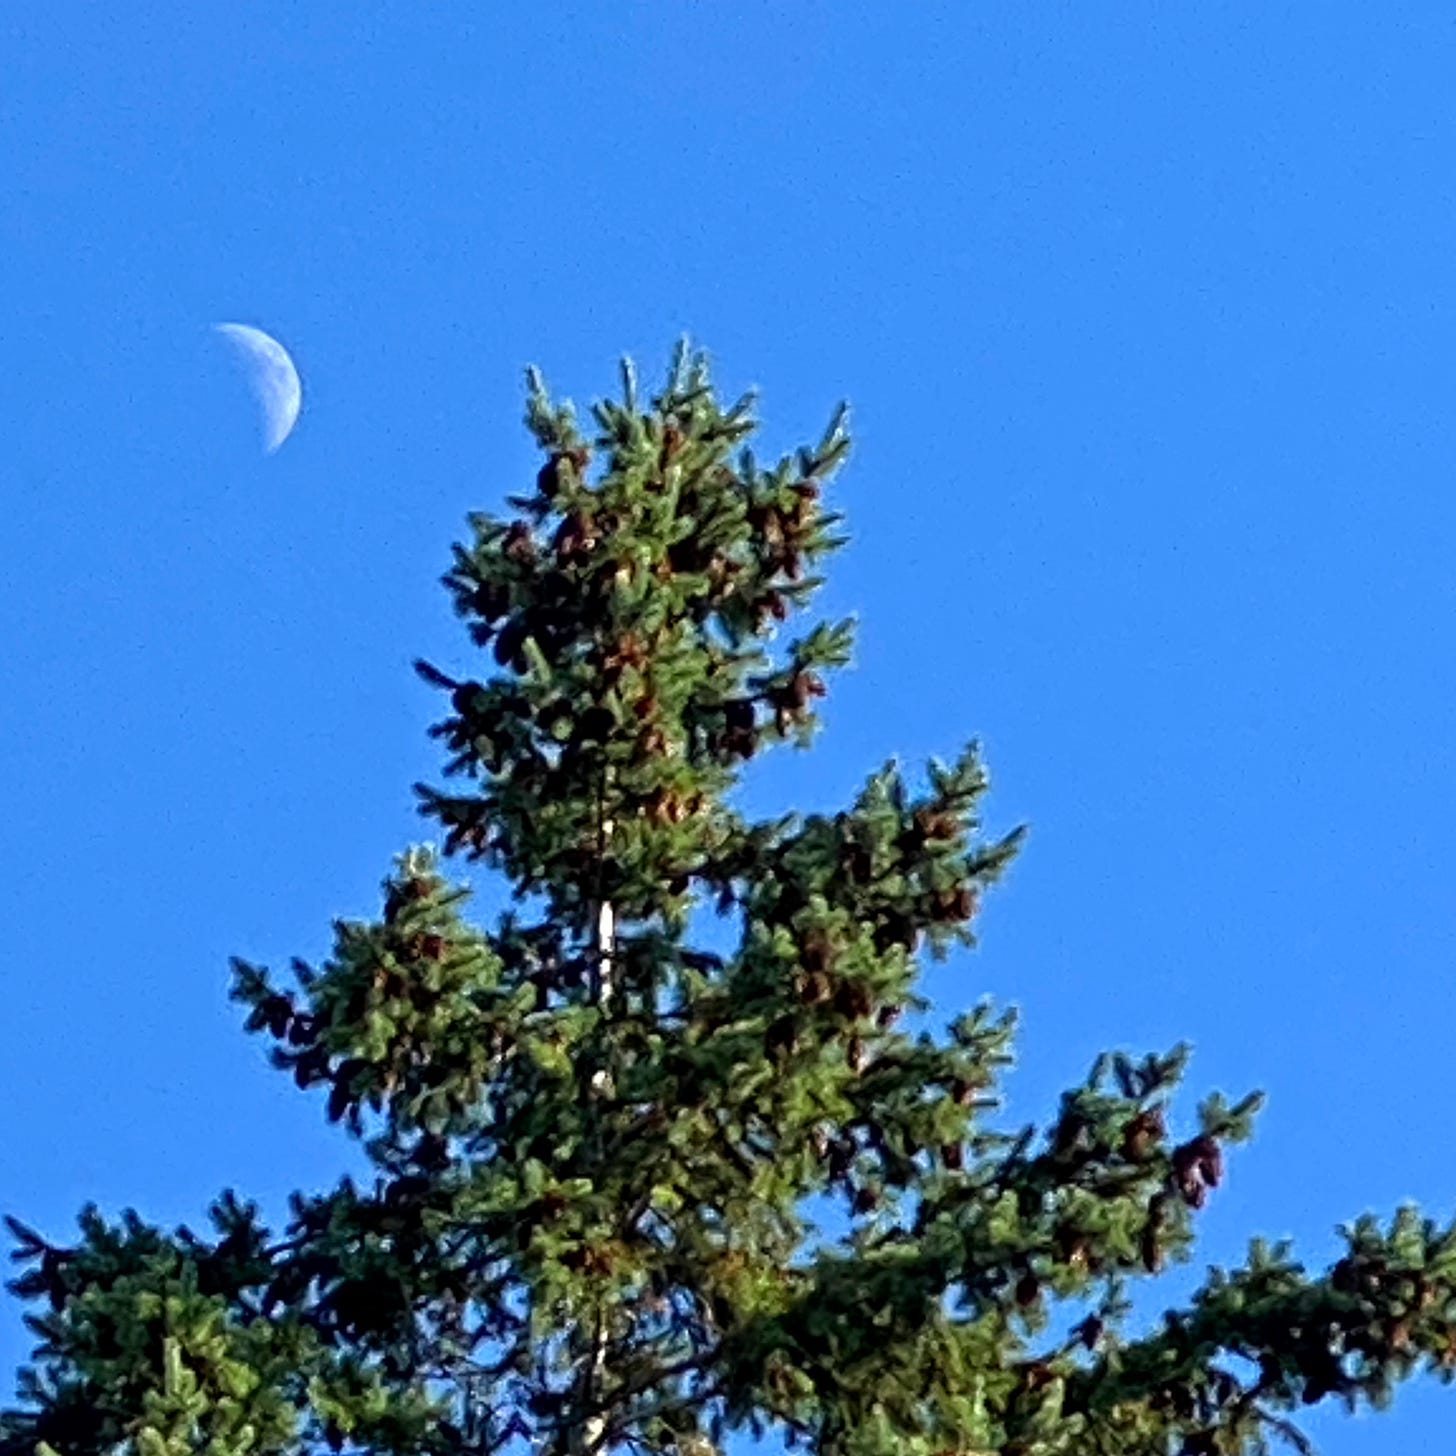 A waxing moon near a tree